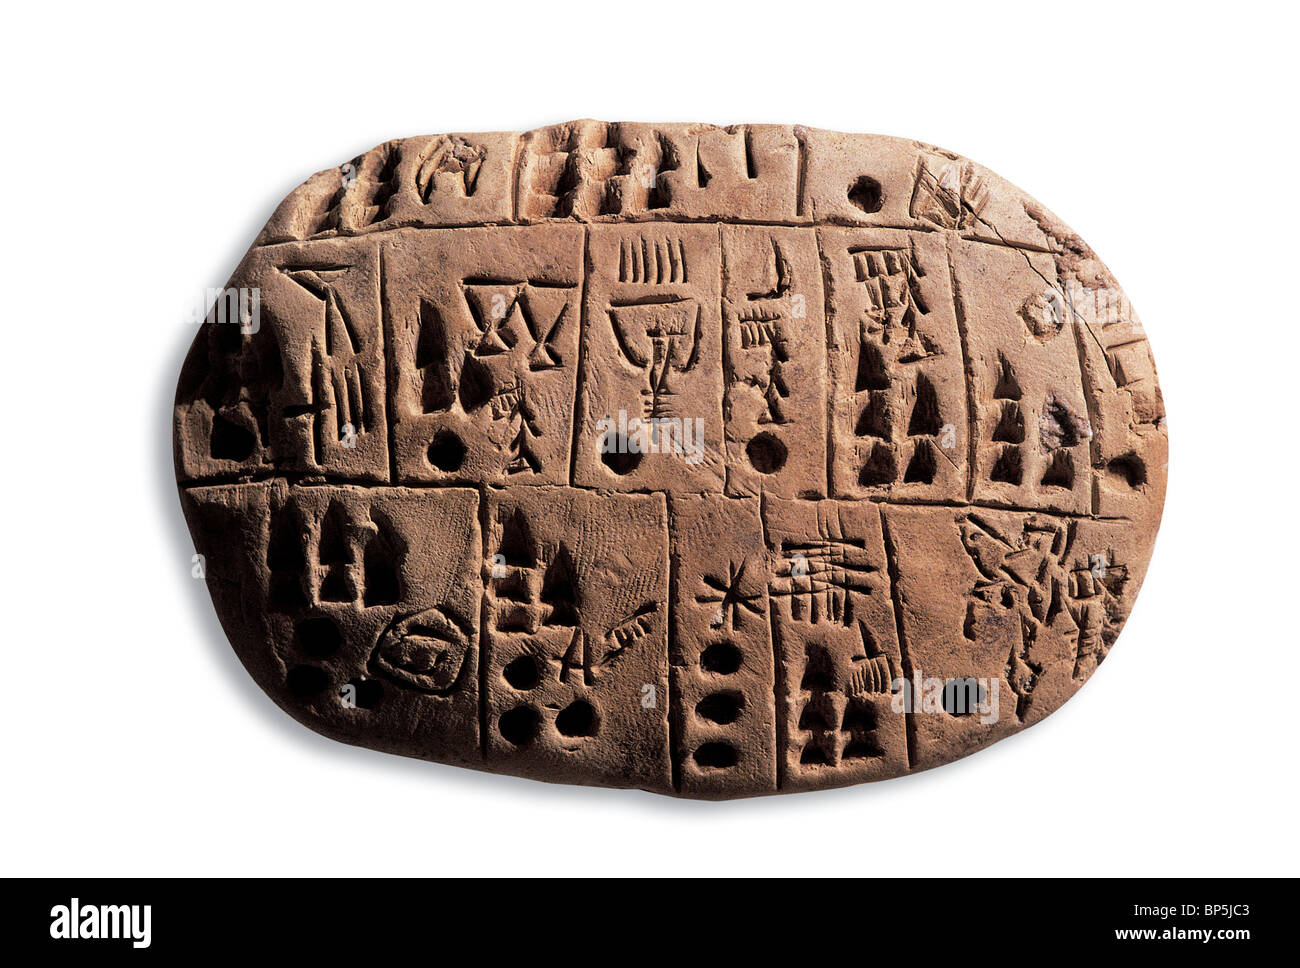 Tablette d'argile portant un script pictographique archaïques. Originaire de la Mésopotamie à la fin du quatrième millénaire av. J.-C. C'est t Banque D'Images